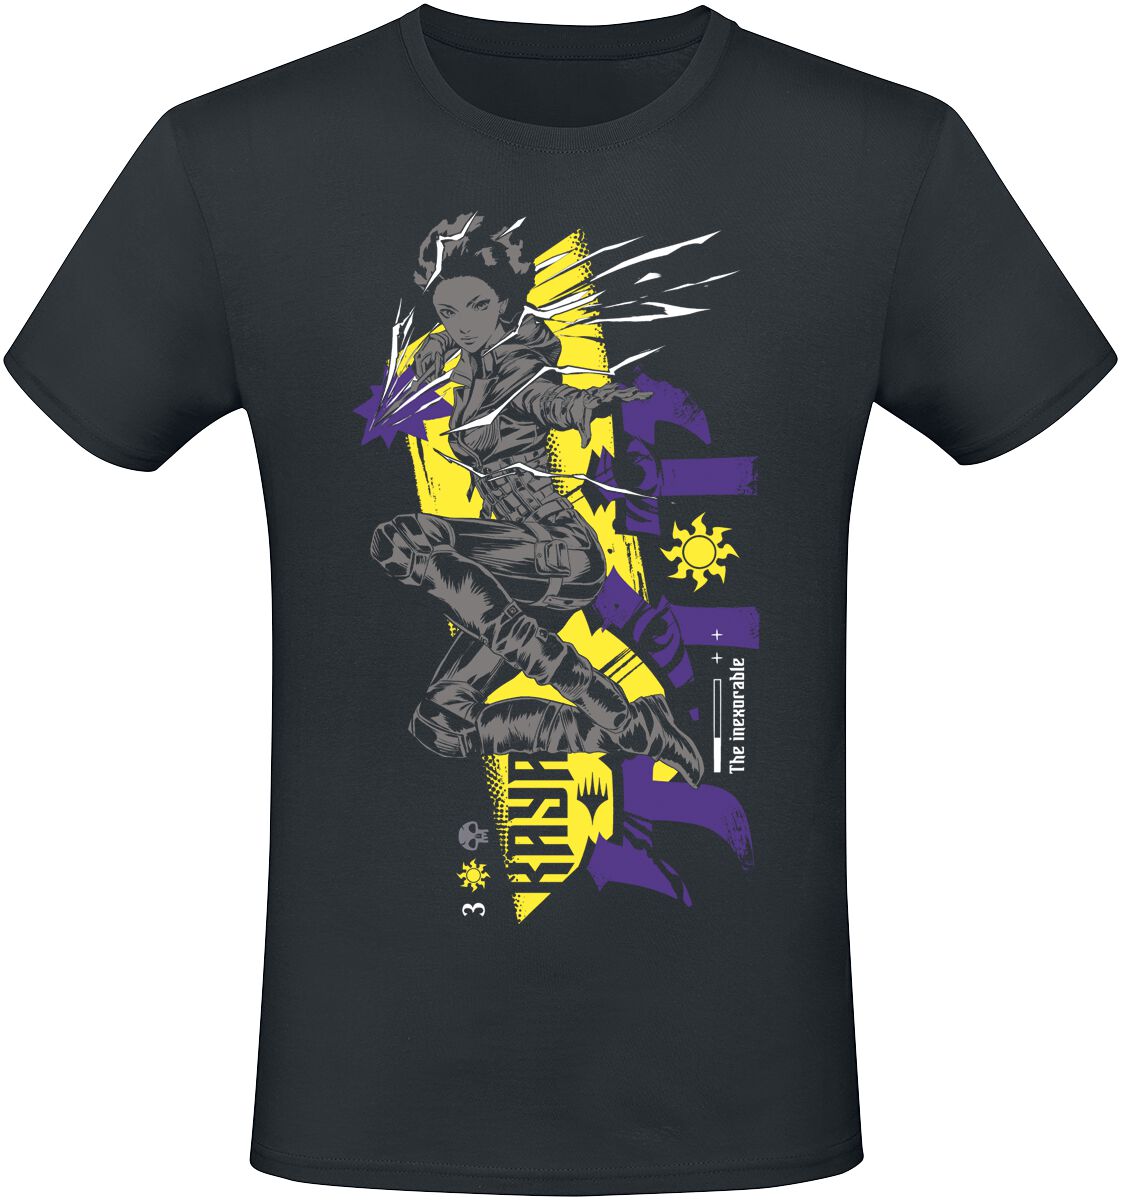 Magic: The Gathering - Gaming T-Shirt - Kaya - S bis XXL - für Männer - Größe XXL - schwarz  - EMP exklusives Merchandise!